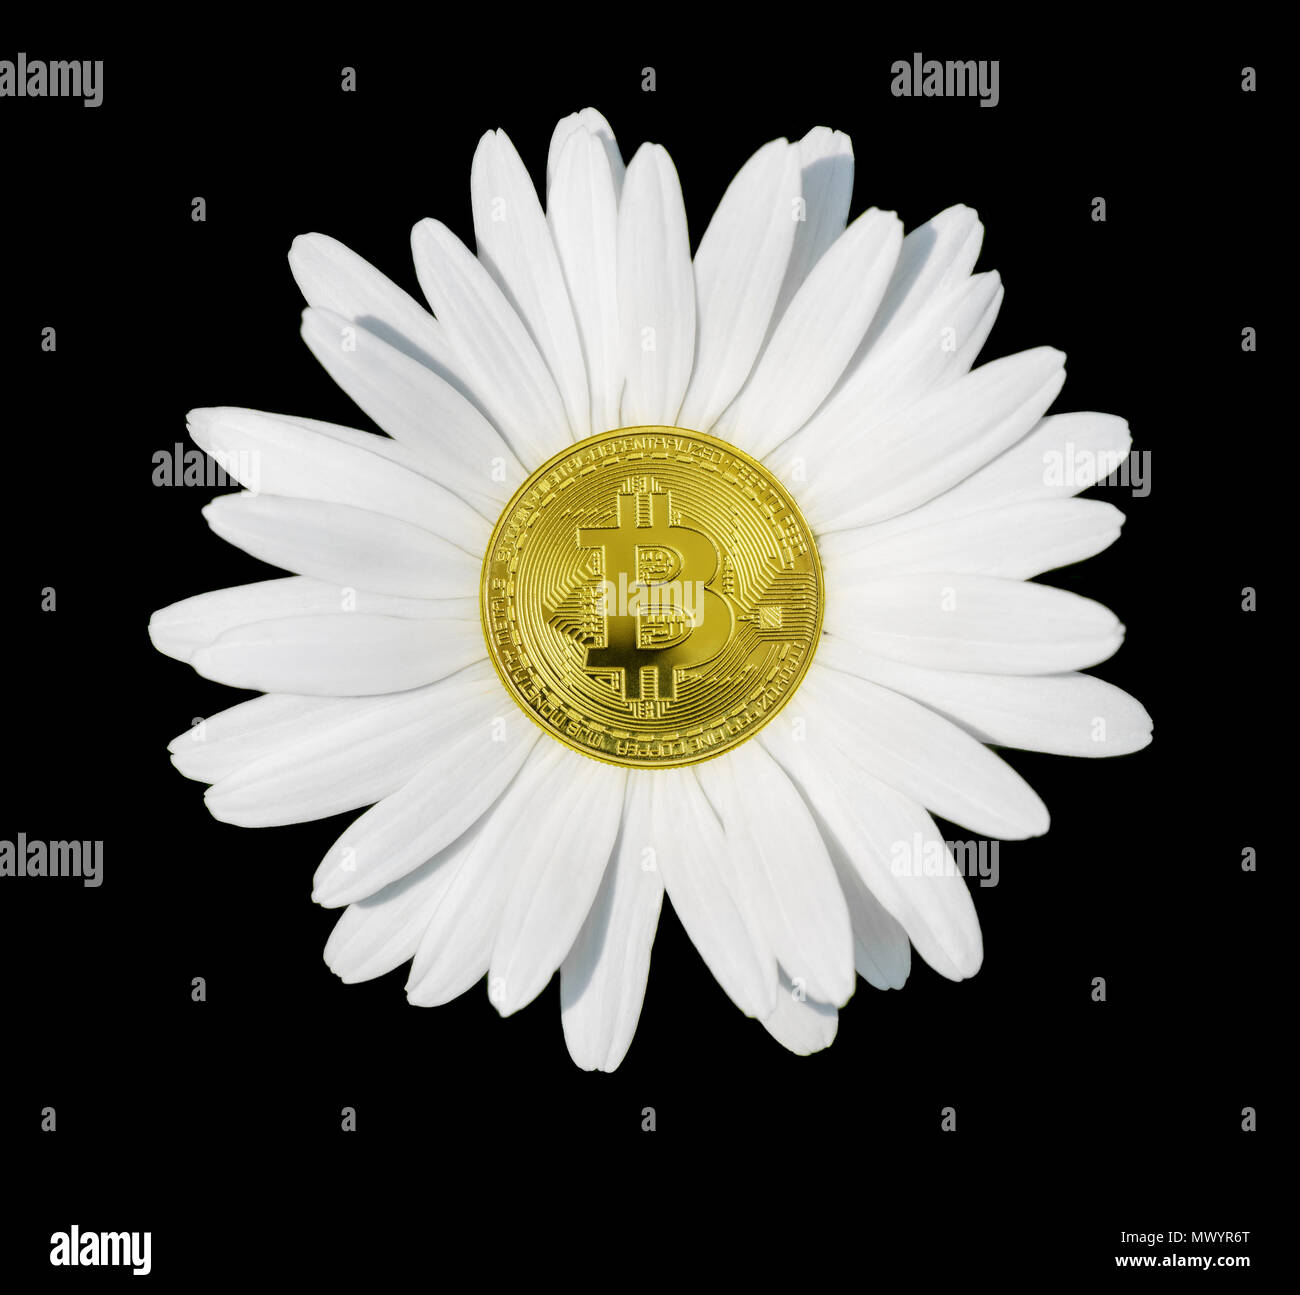 Konzept bitcoin - Kamille Blume mit weißen Blütenblättern close-up, auf einem schwarzen Hintergrund isoliert Stockfoto